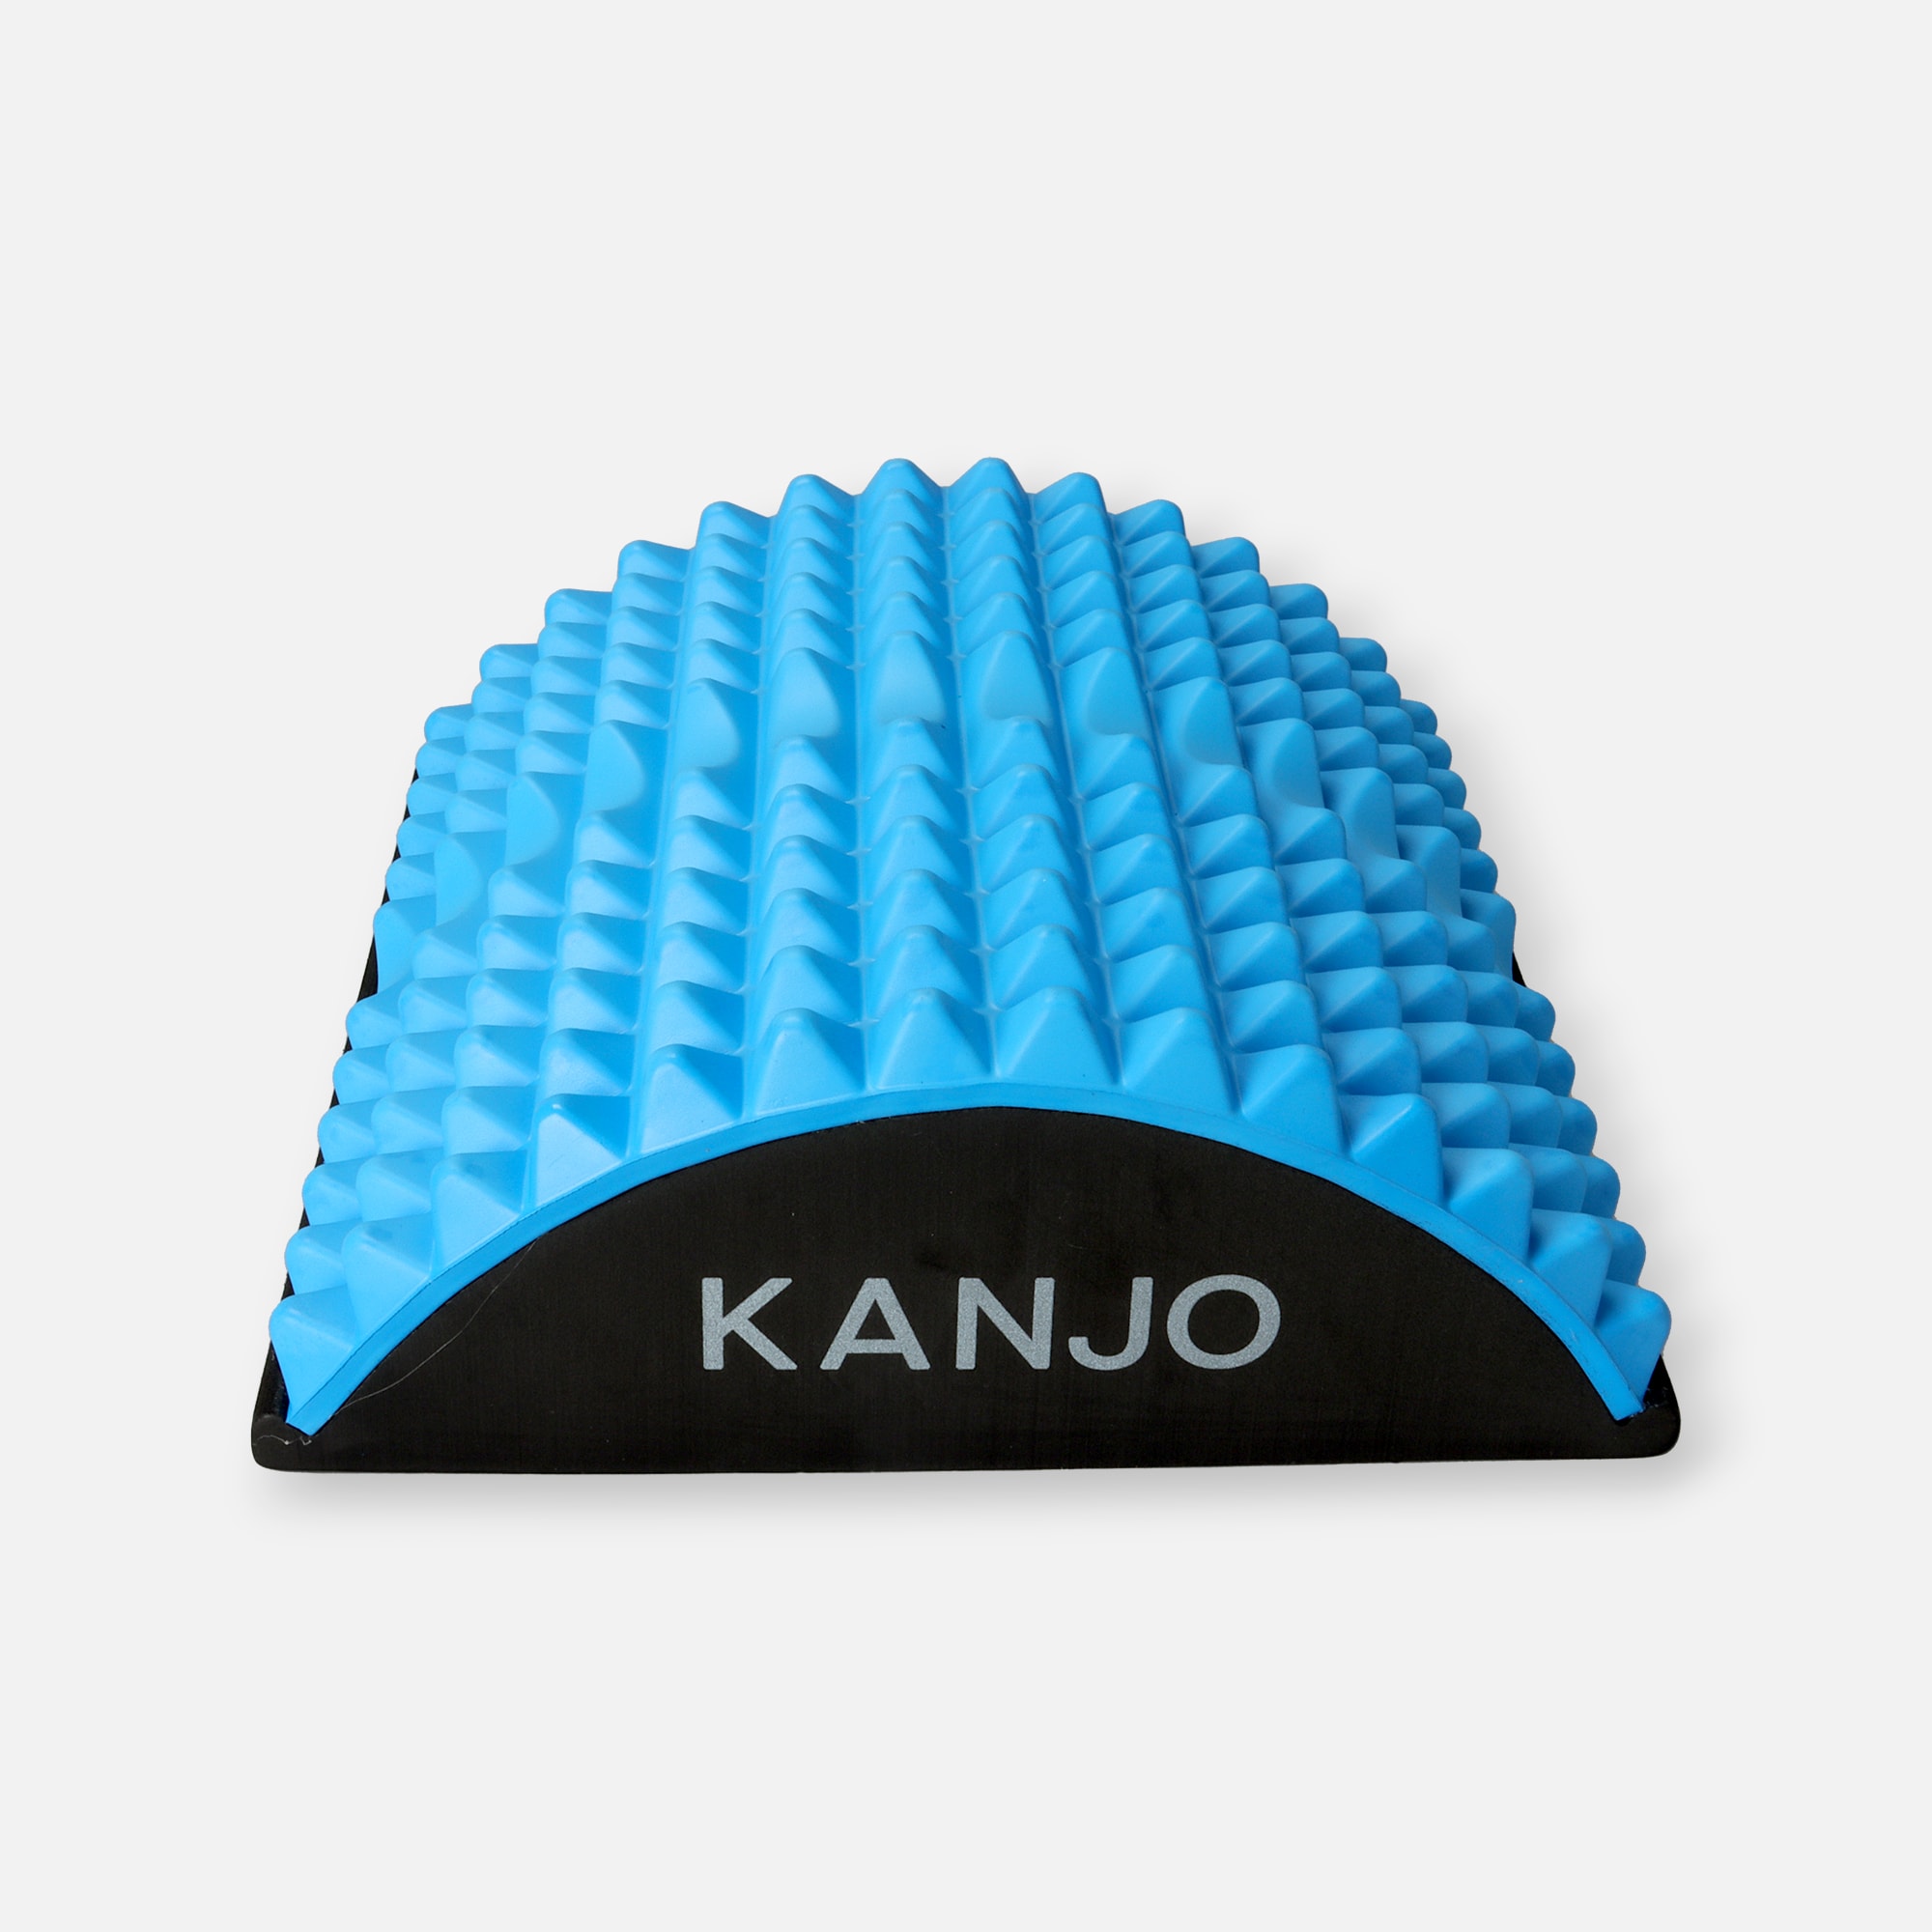 https://hsastore.com/on/demandware.static/-/Sites-hec-master/default/dwa1796b06/images/large/kanjo-acupressure-back-pain-relief-cushion-28718-1.jpg